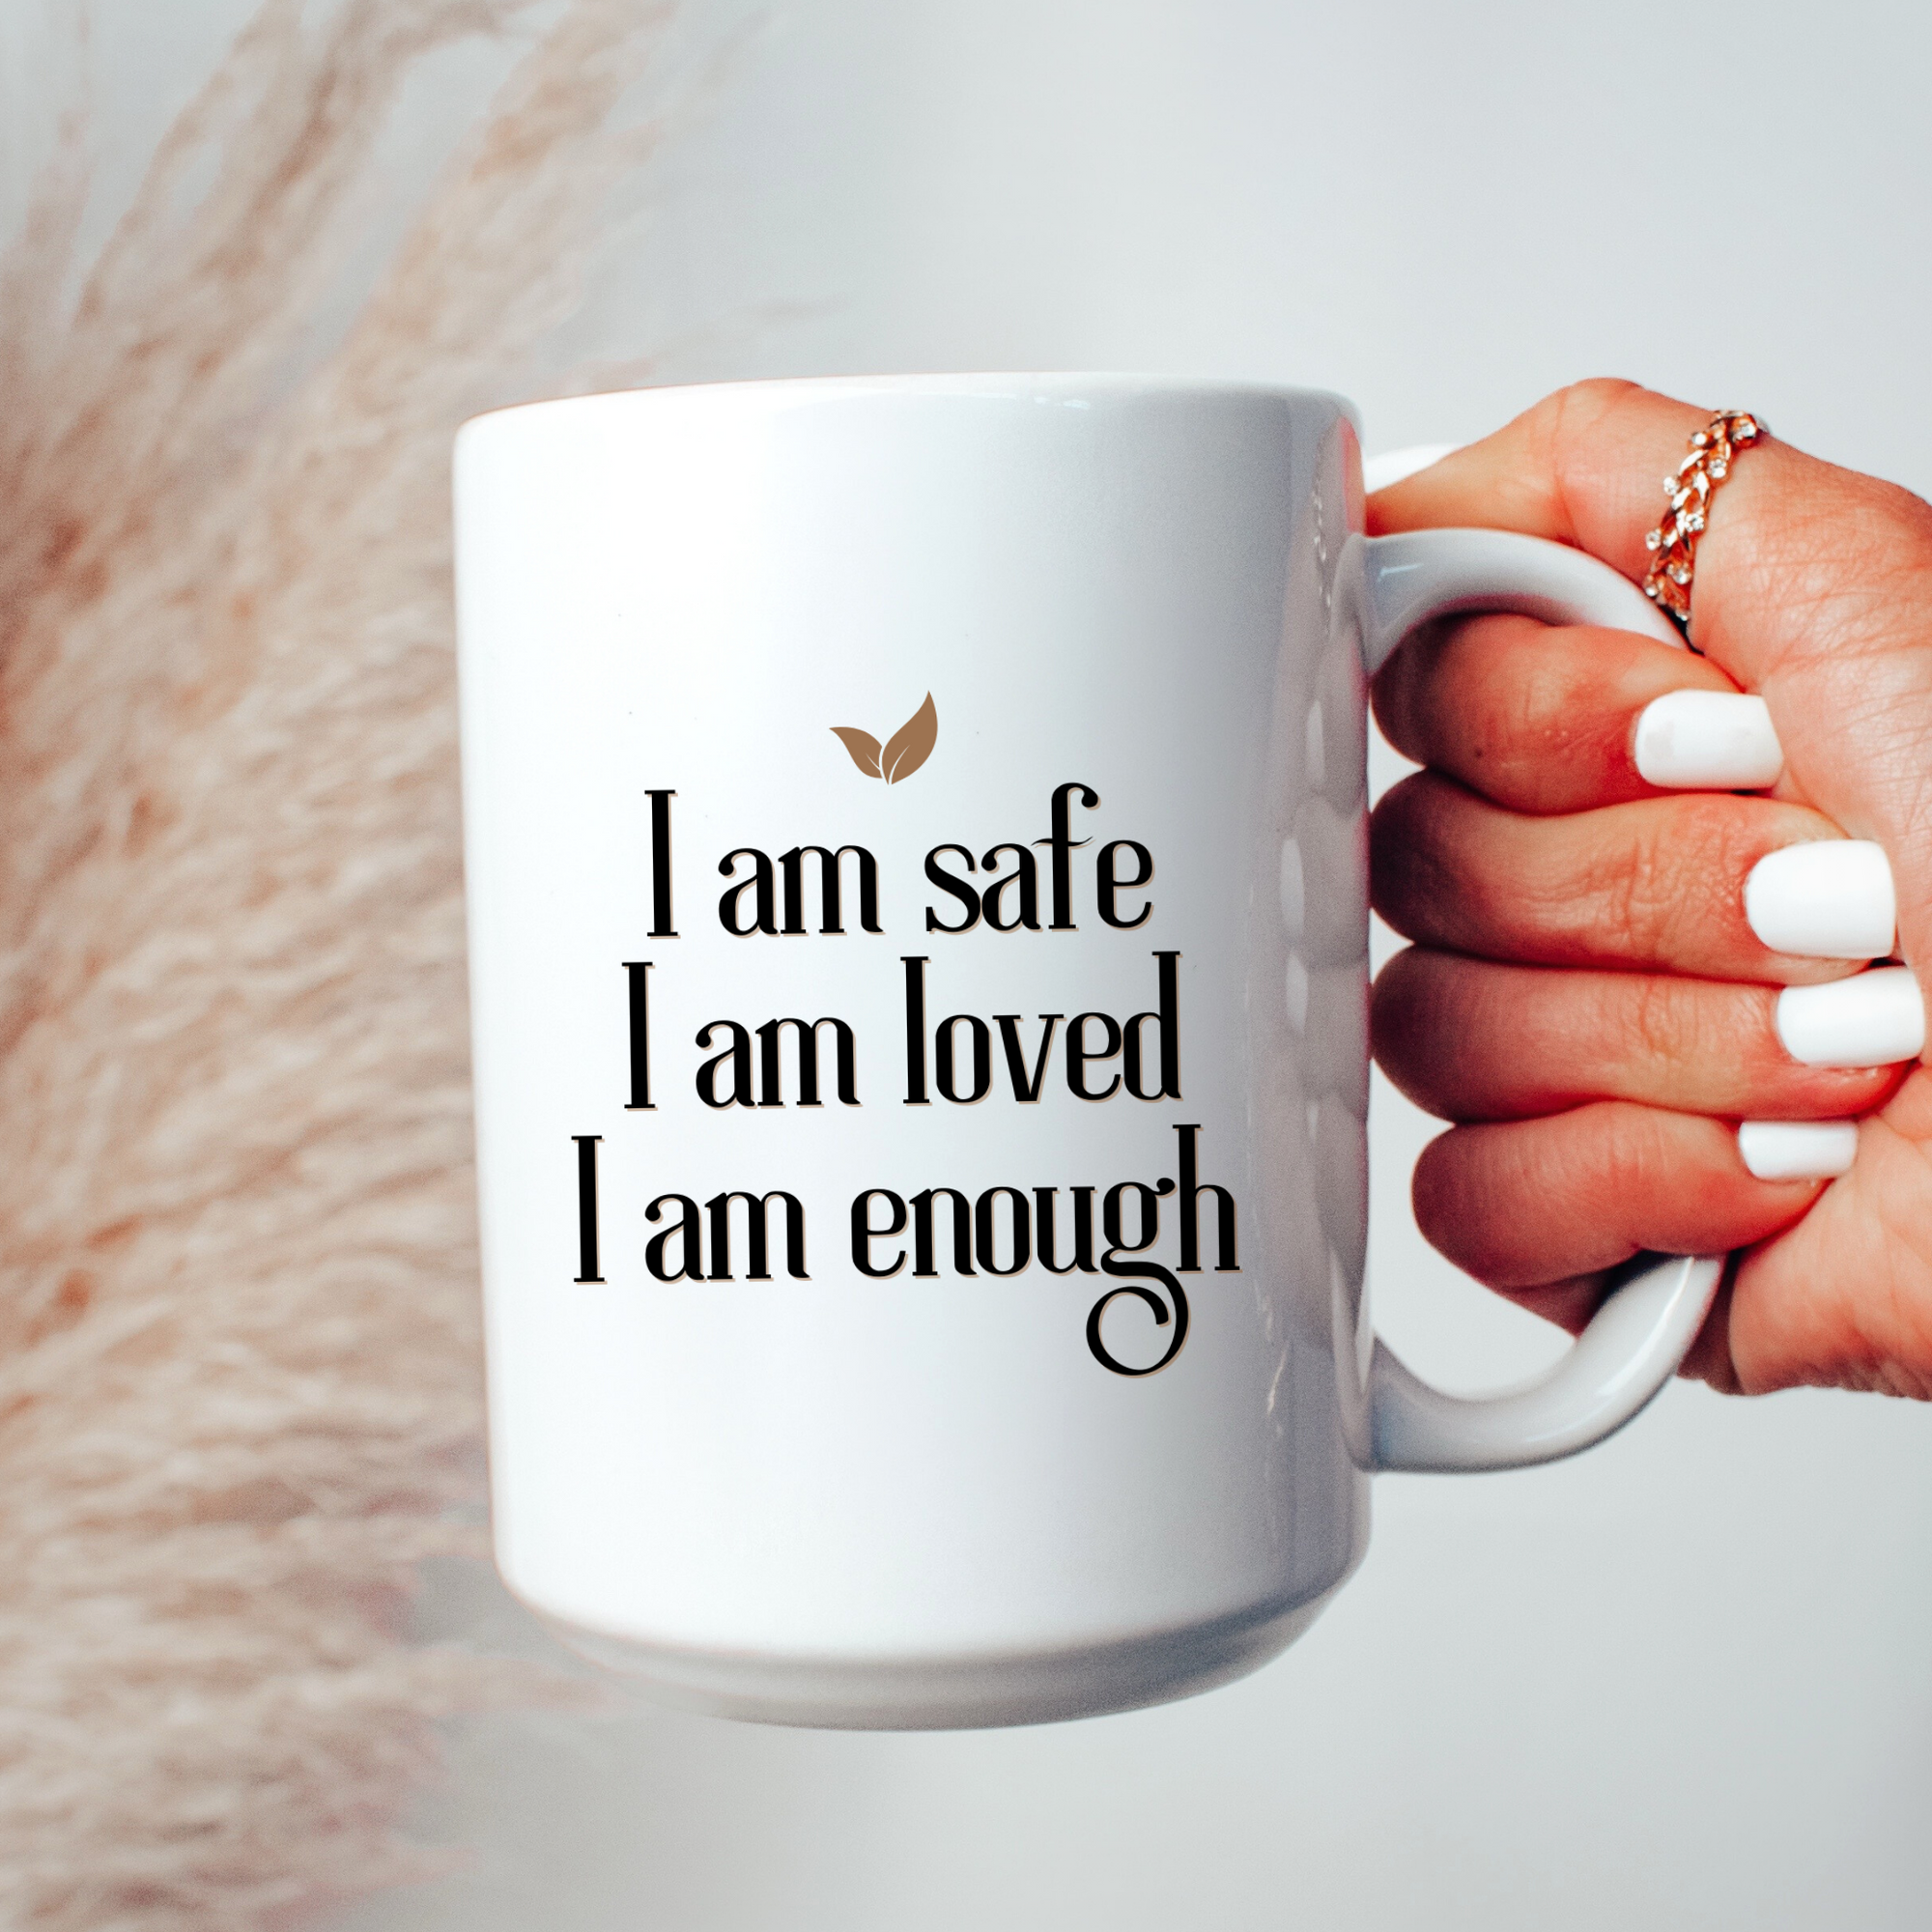 I AM SAFE, I AM LOVED, I AM ENOUGH- Mug